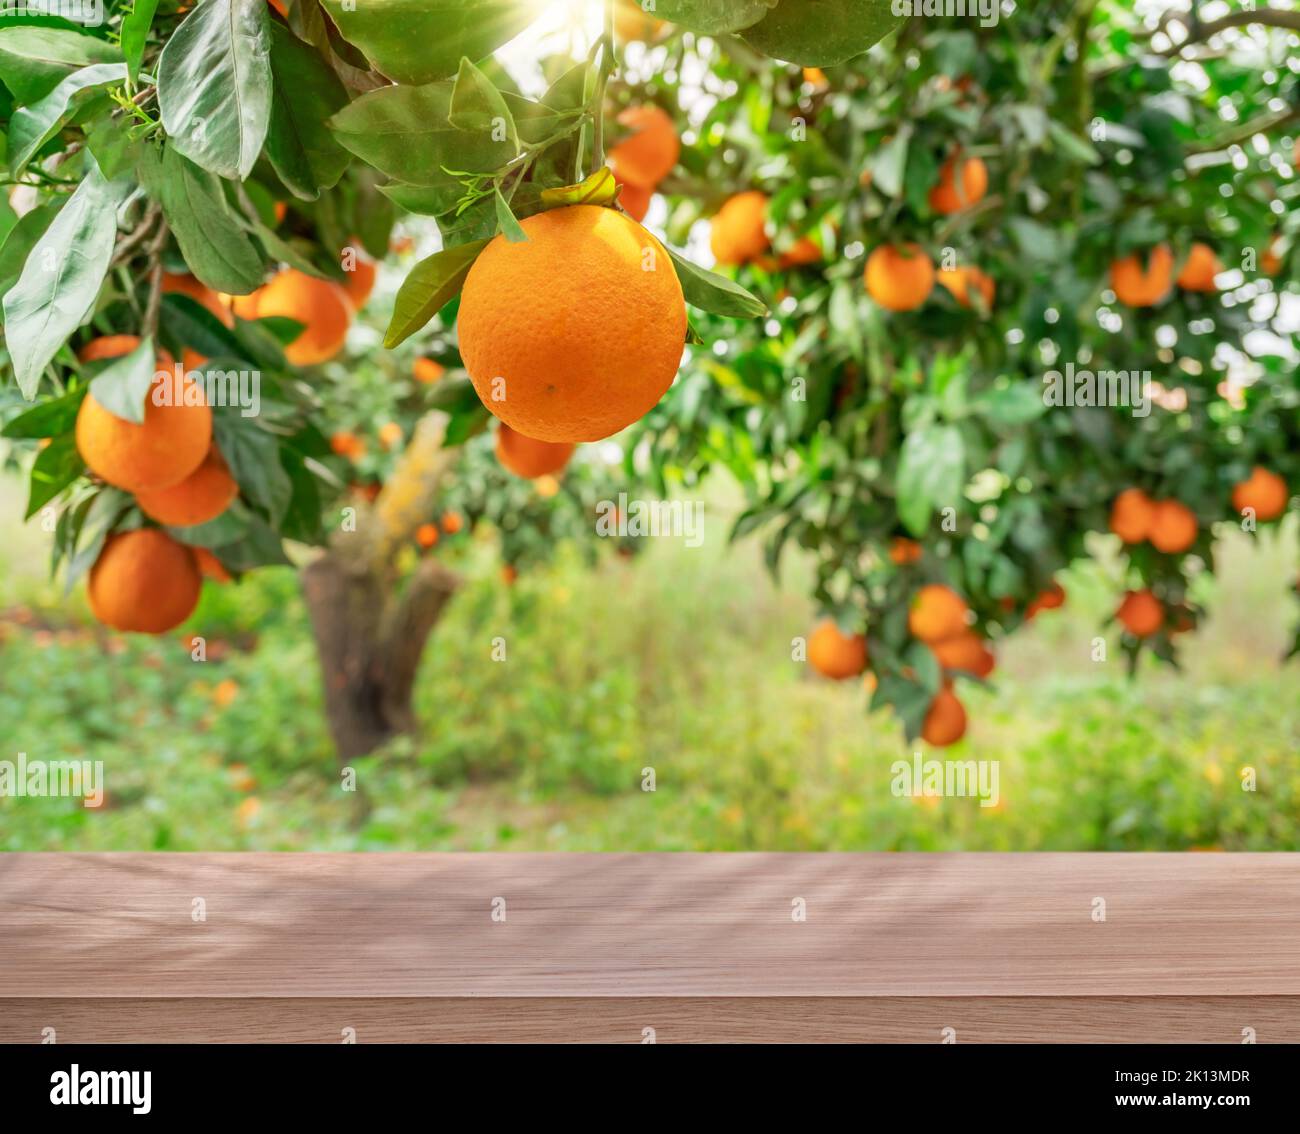 Dessus de table en bois, ander orangers couverts de fruits orange. Jardin de verger ensoleillé et flou en arrière-plan. Banque D'Images